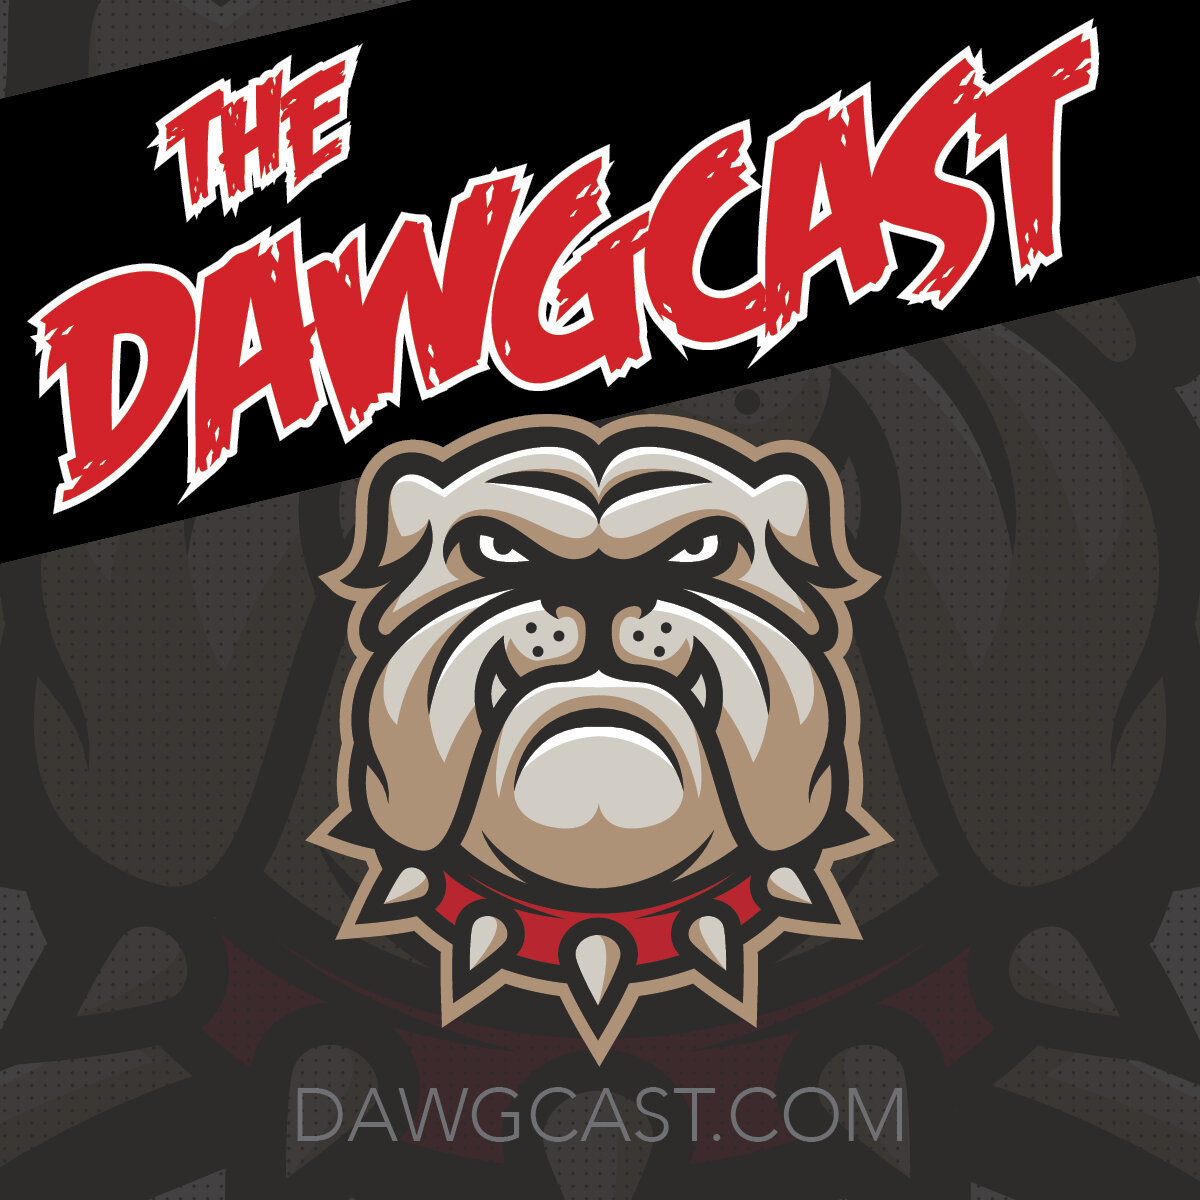 The DawgCast